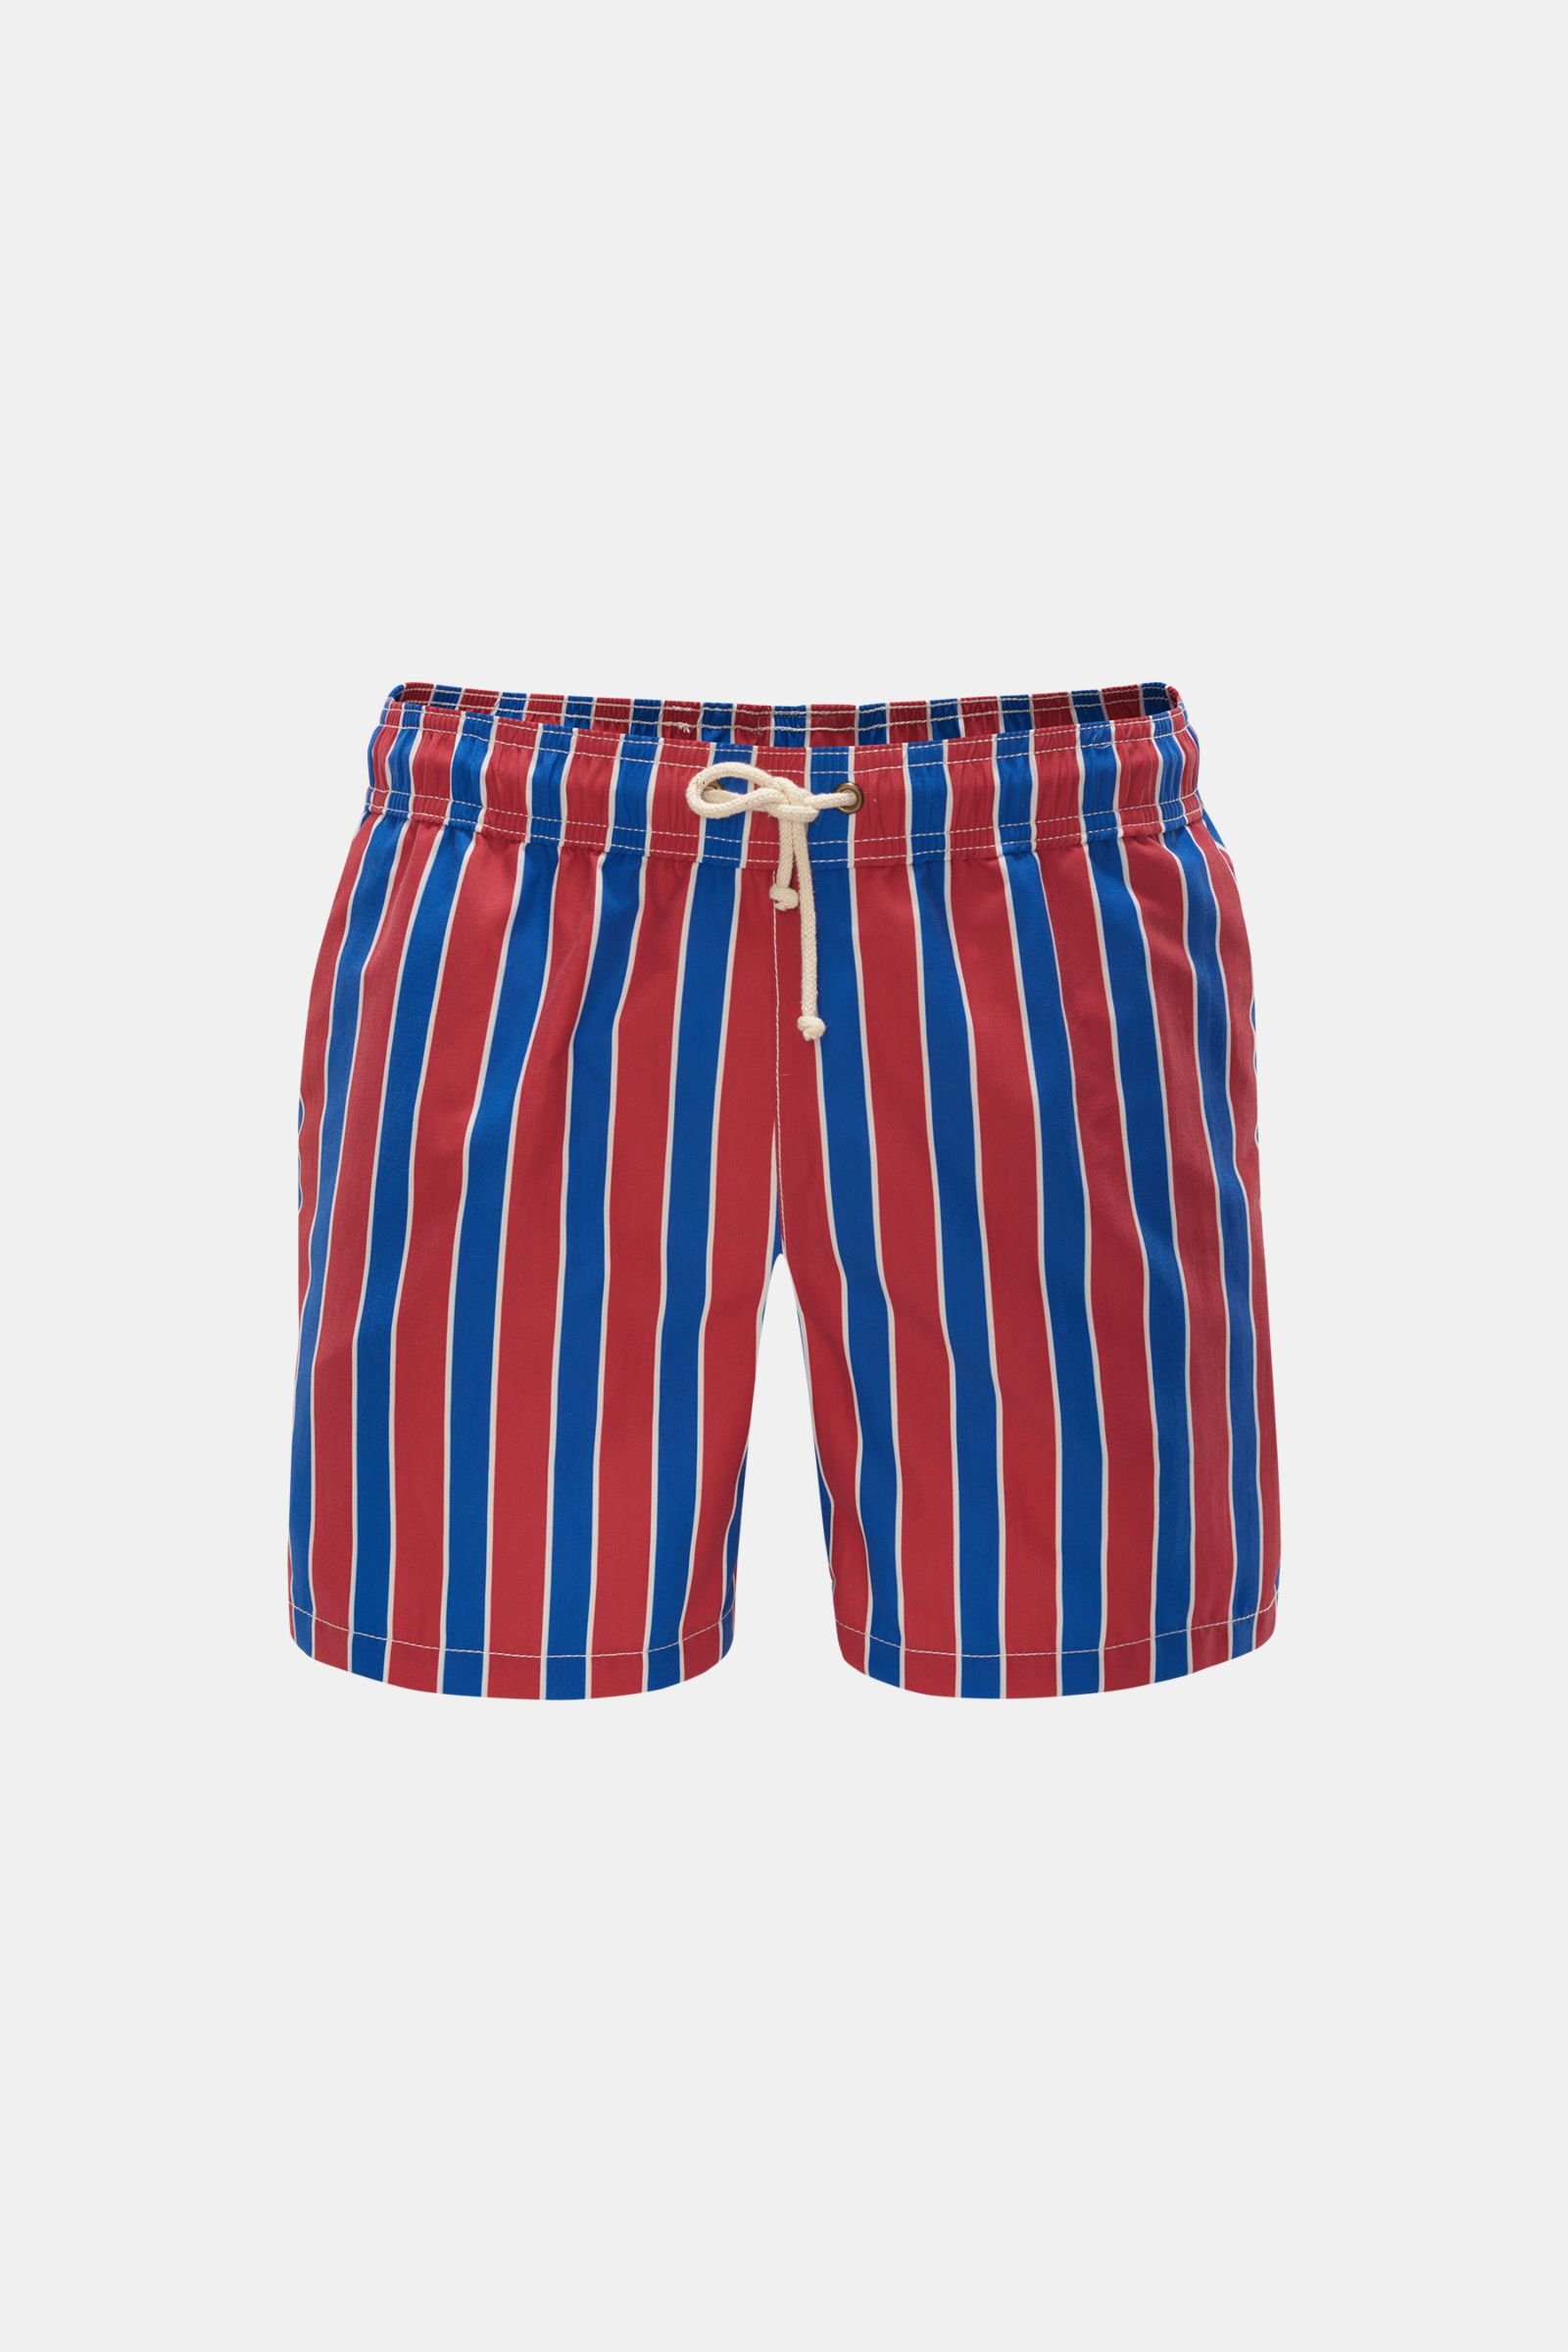 Swim shorts 'Monterosso' red/dark blue striped